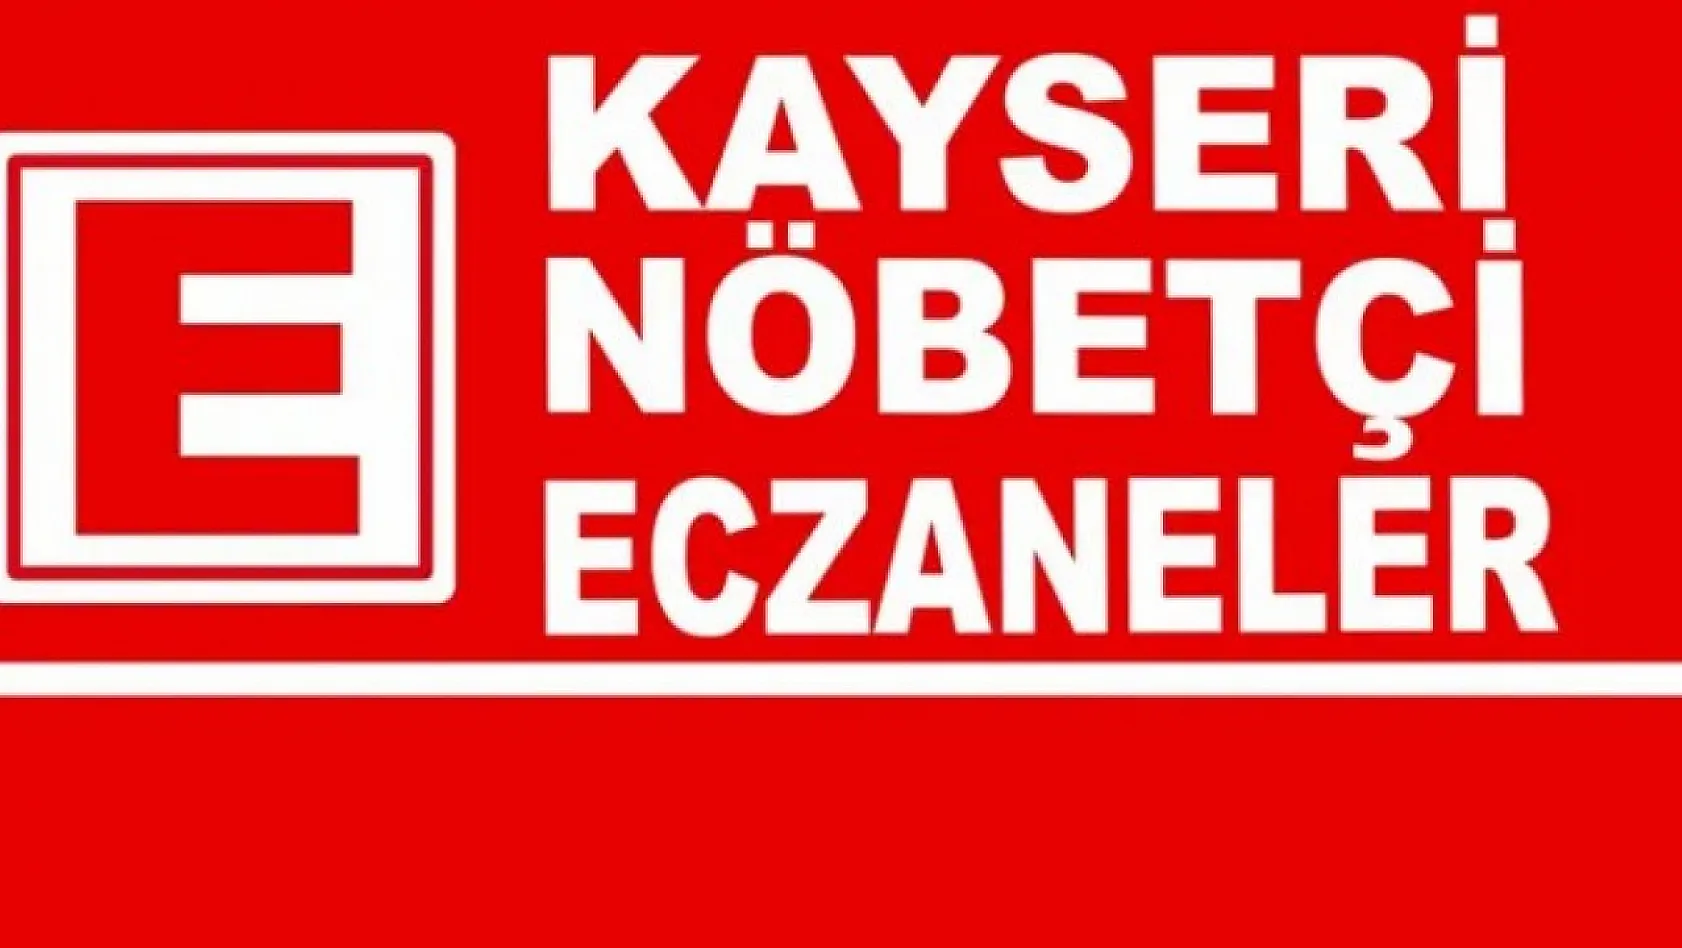 Bugün Kayseri'de sadece 11 eczane nöbetçi!